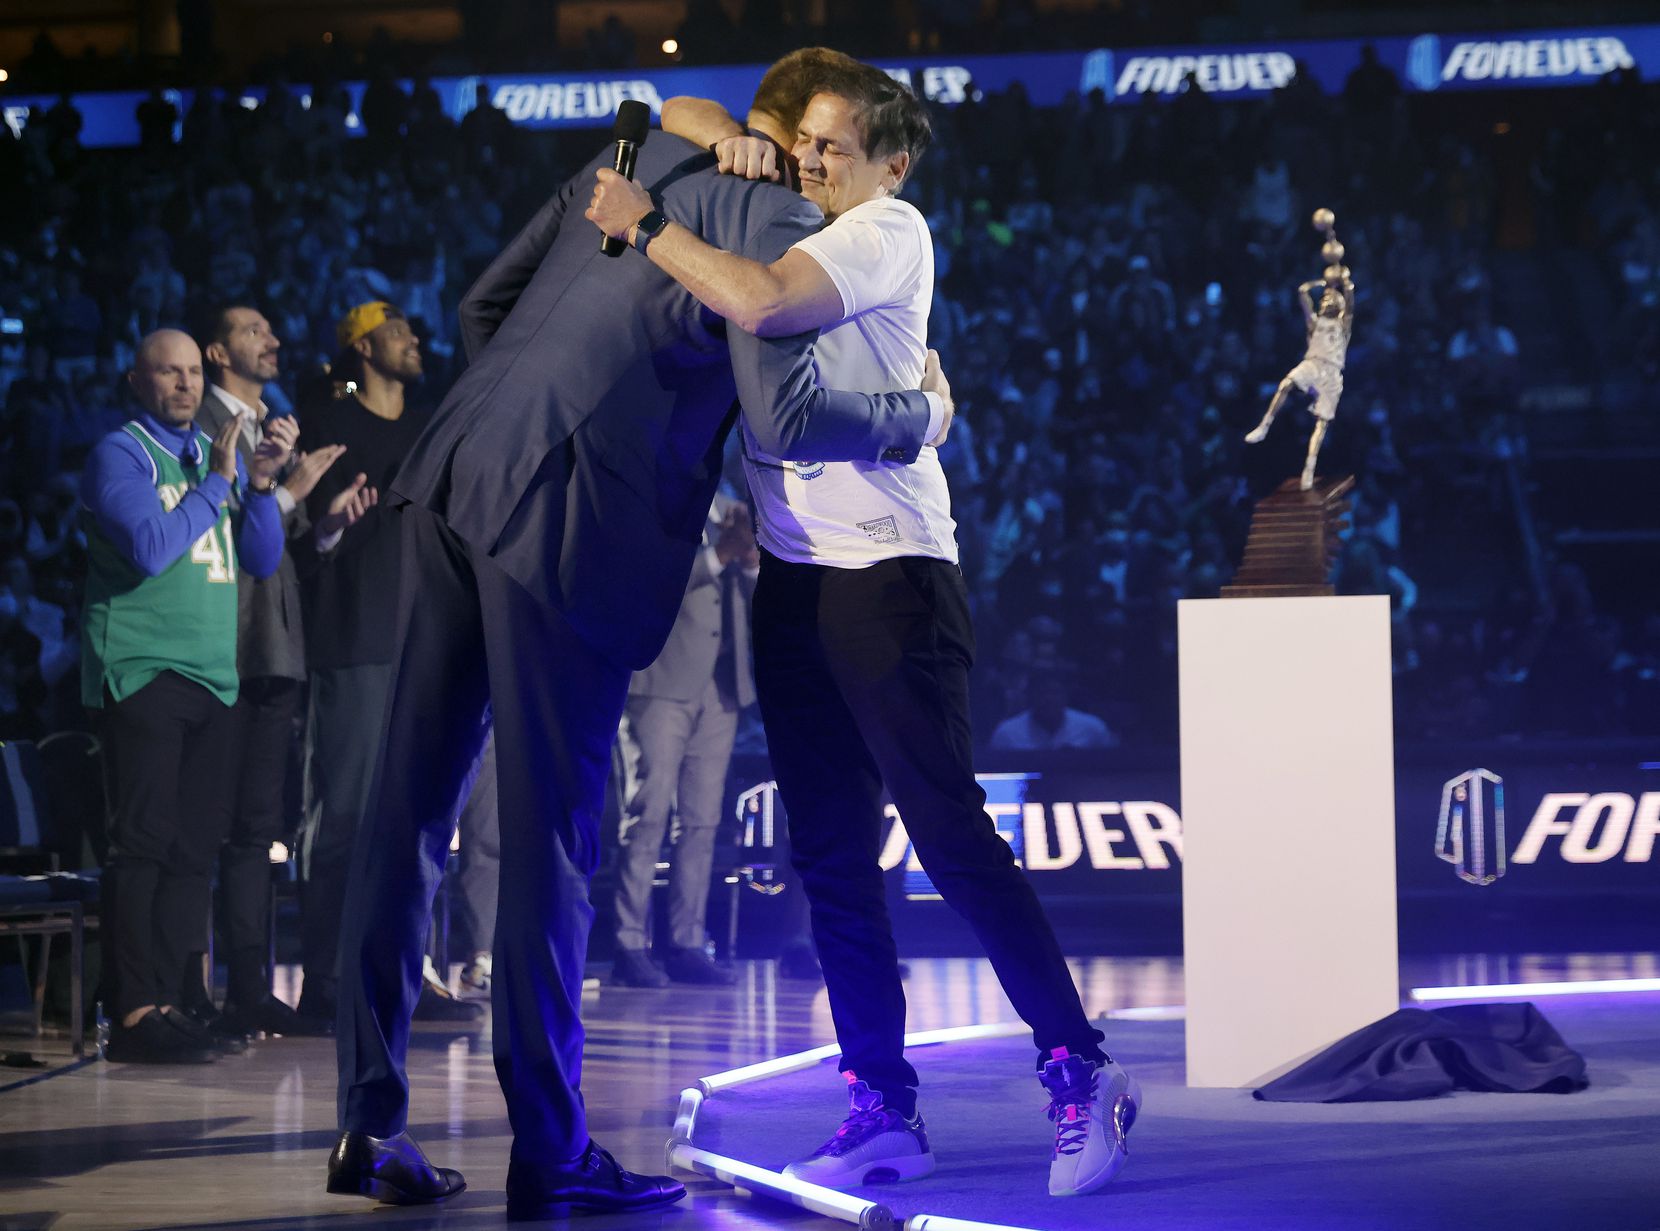 After making some remarks, former Dallas Mavericks All-Star Dirk Nowitzki (left) gives a hug...